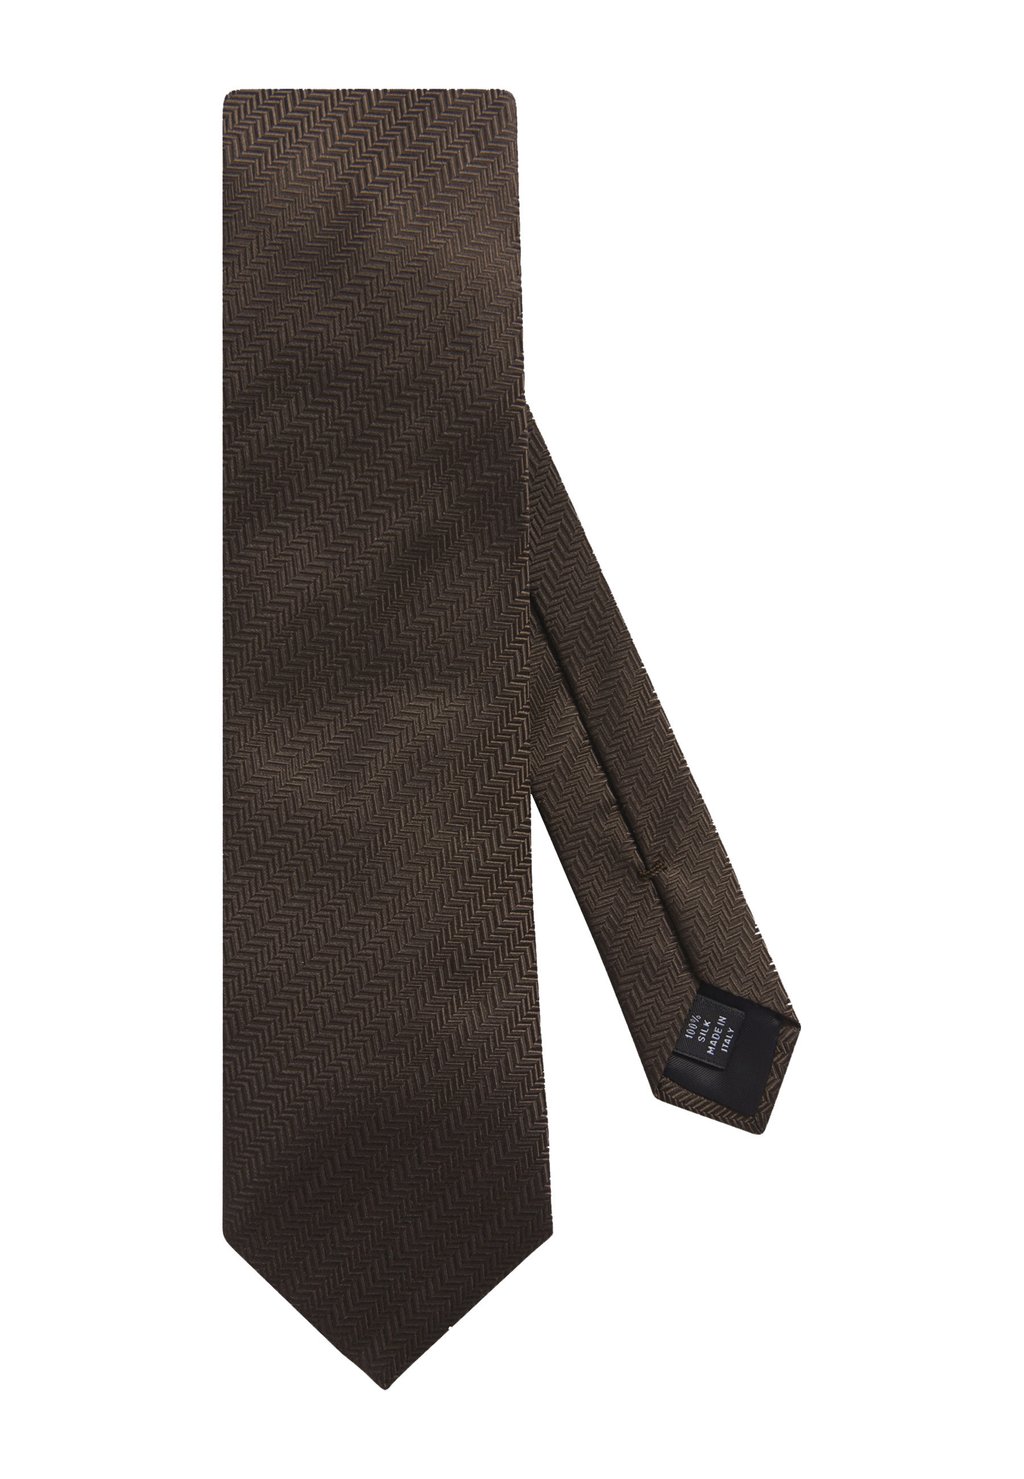 галстук oscar jacobson цвет french blue Галстук Oscar Jacobson, цвет dark brown